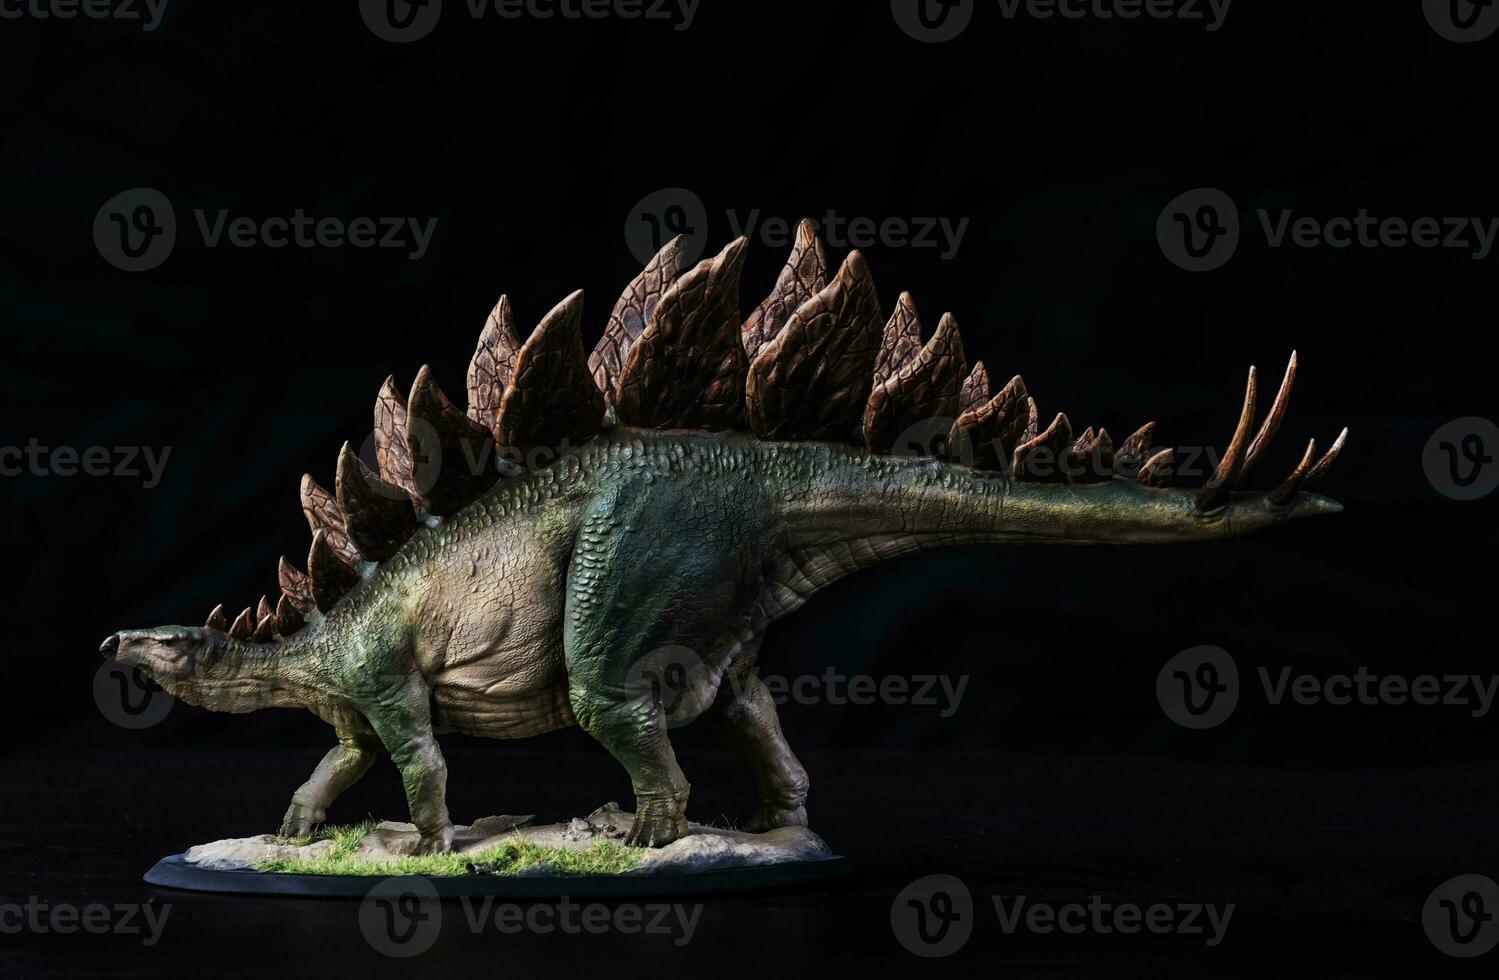 dinosauro stegosauro nel il buio foto